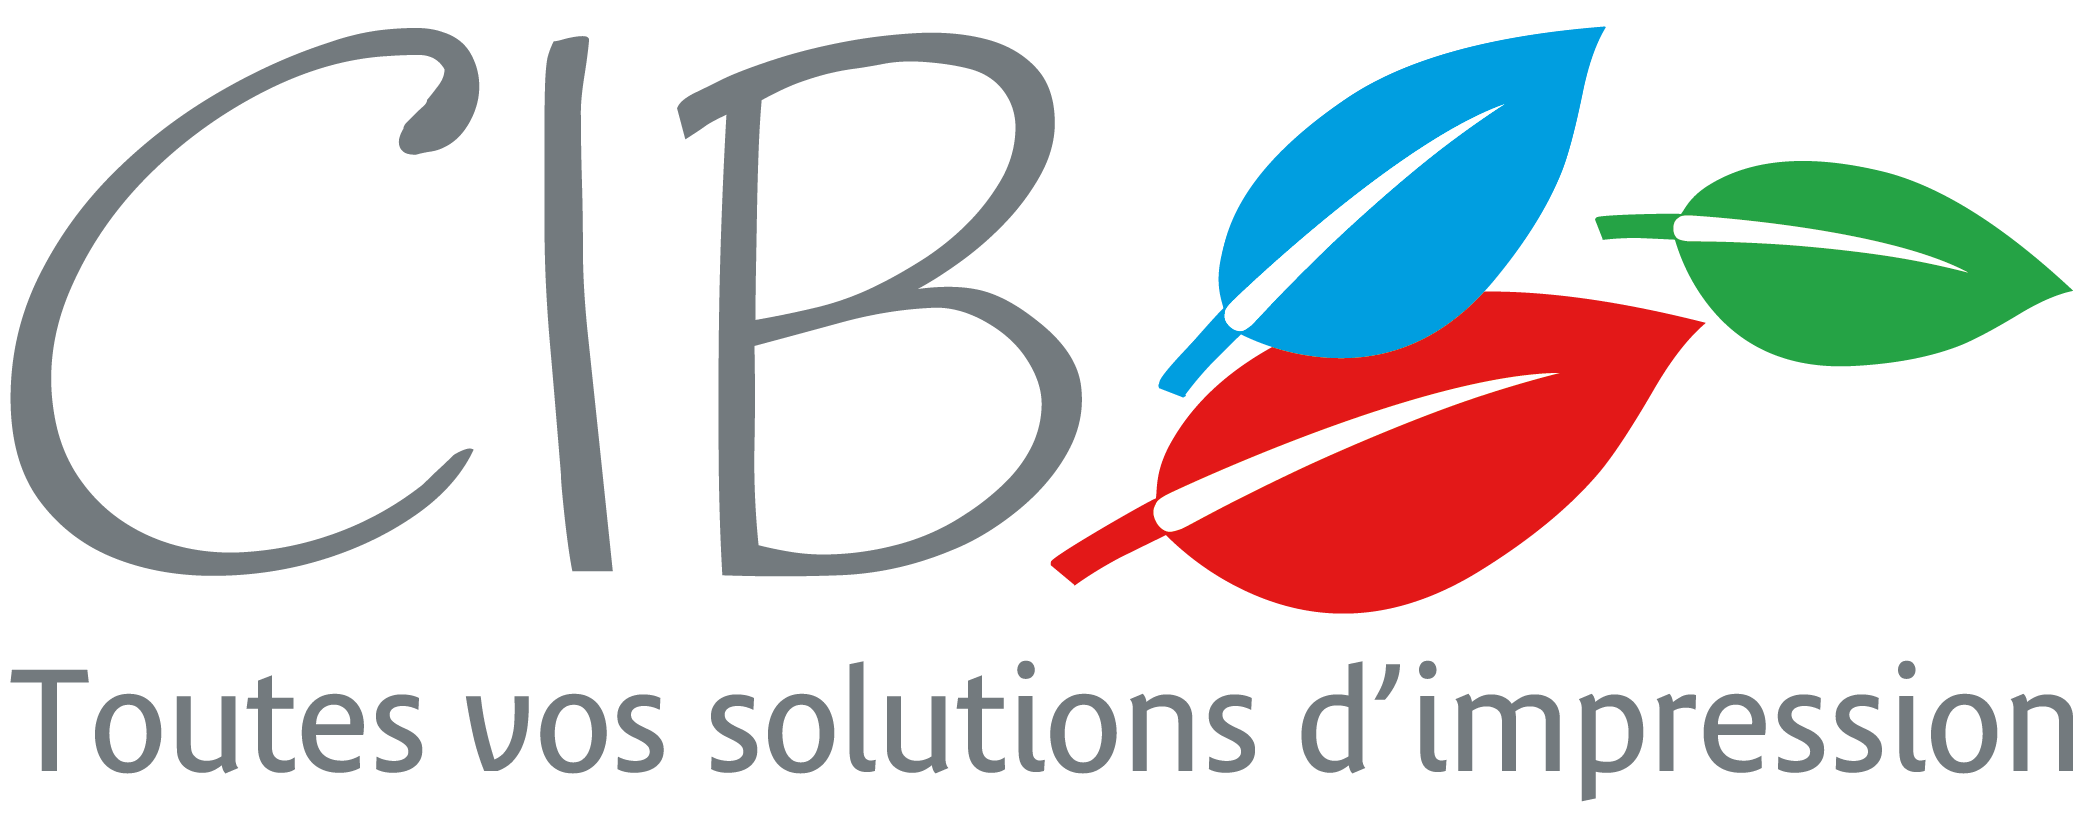 CIB imprimerie Bourgogne Franche-Comté